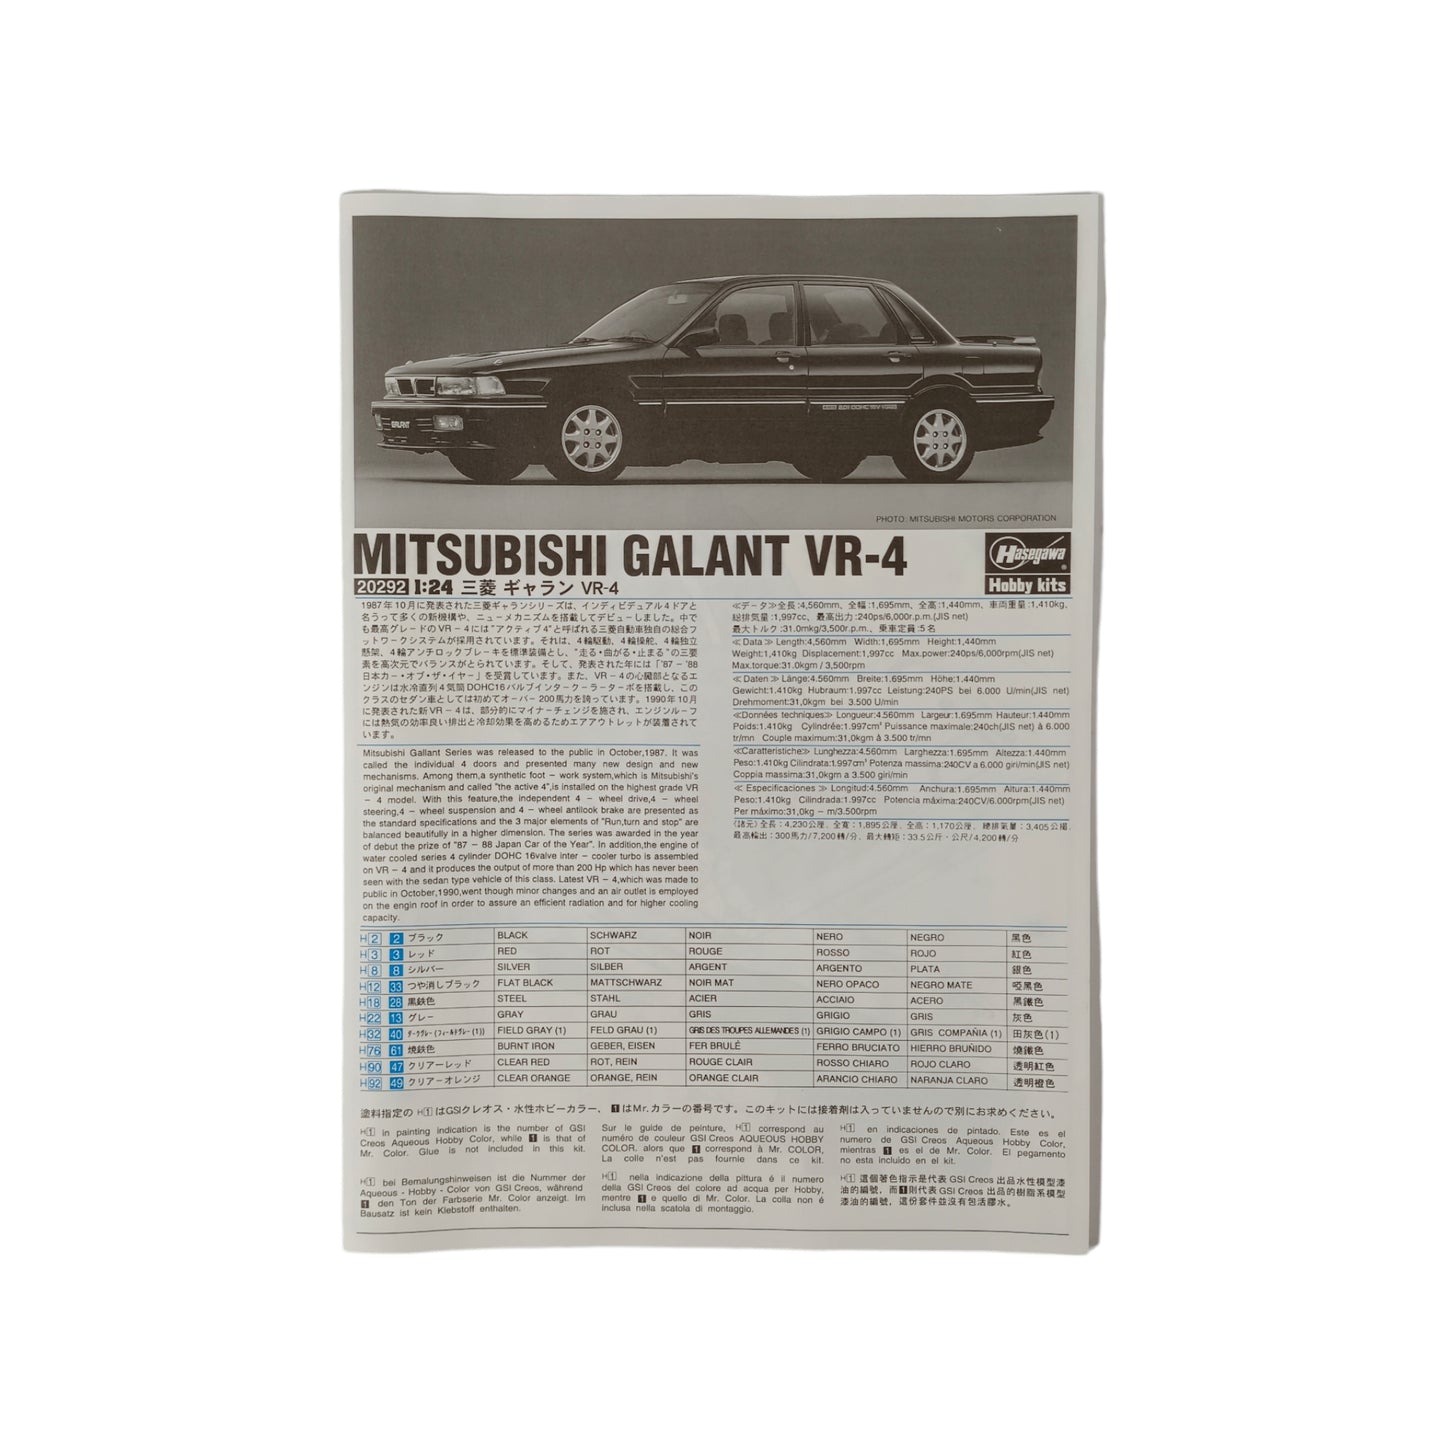 Maquette 1/24 Mitsubishi Galant VR-4